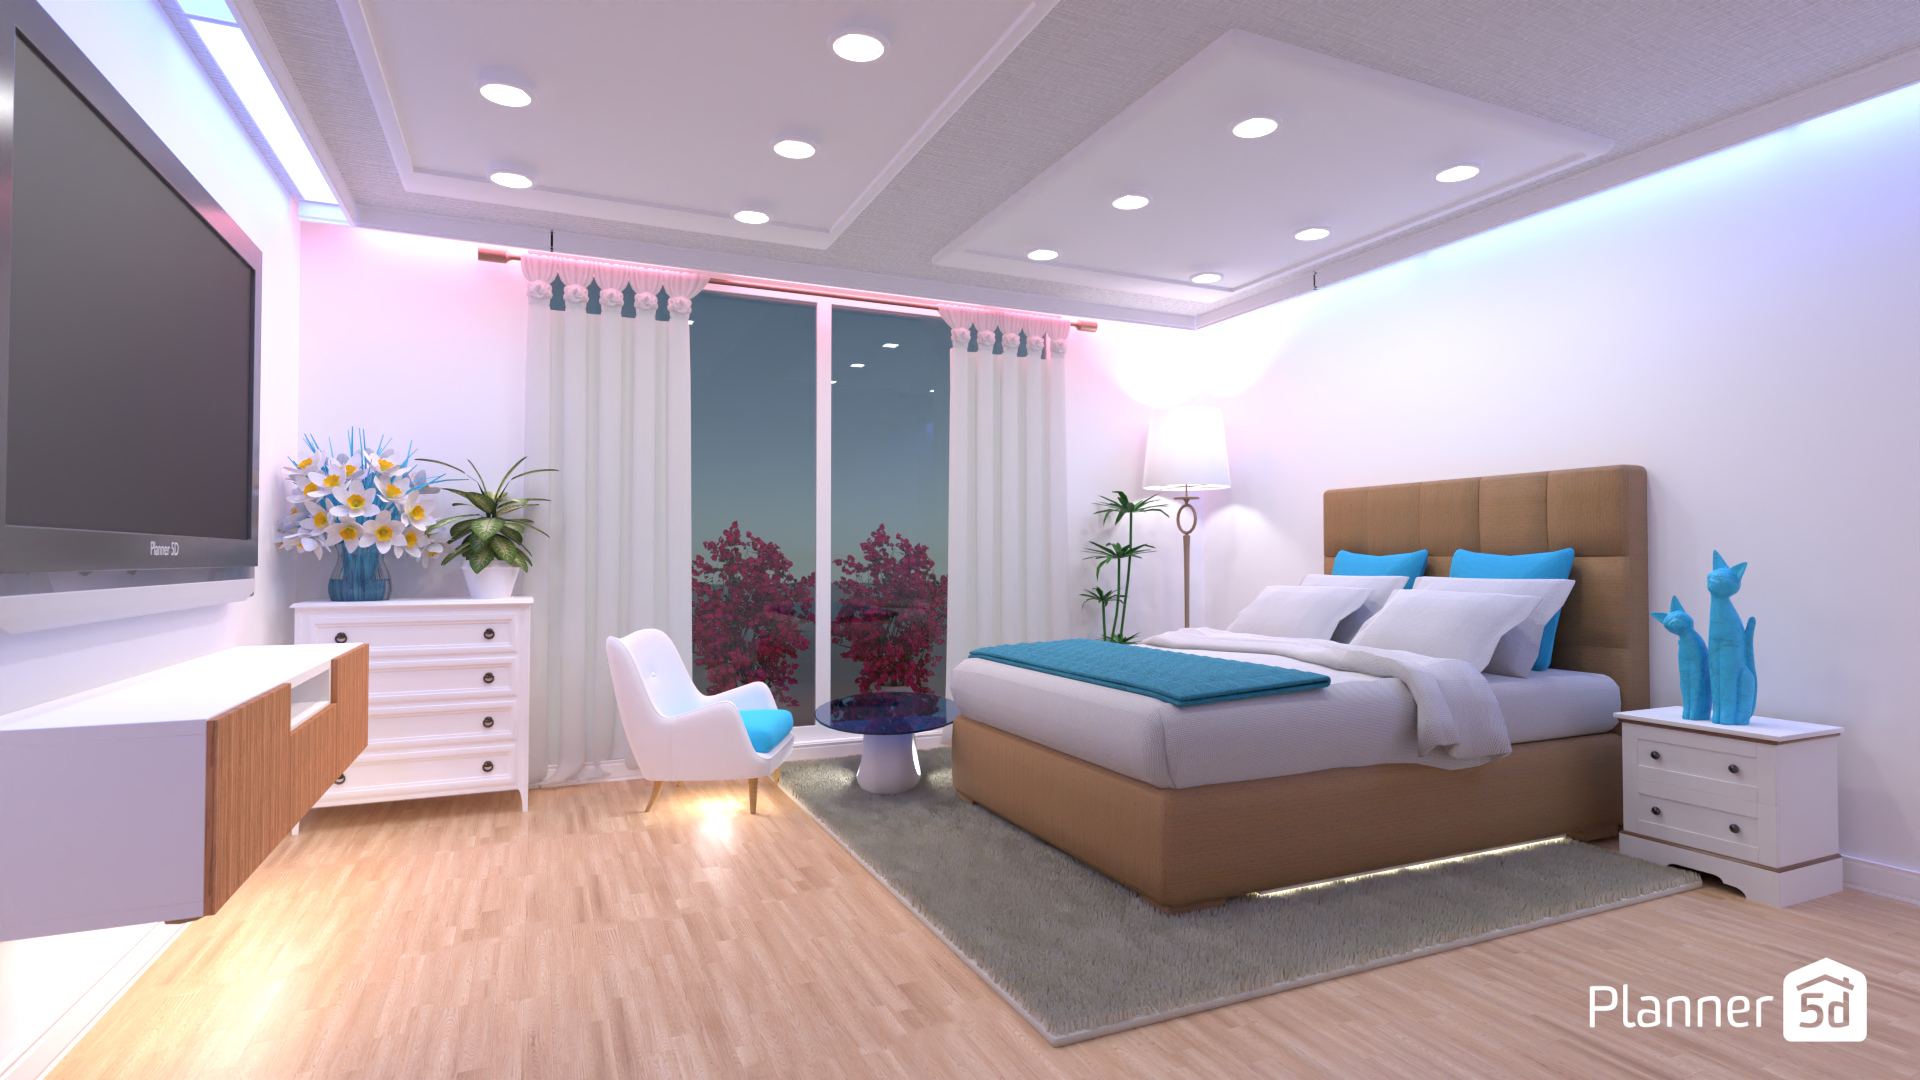 Dormitorio con luces 18695680 by Carturo image